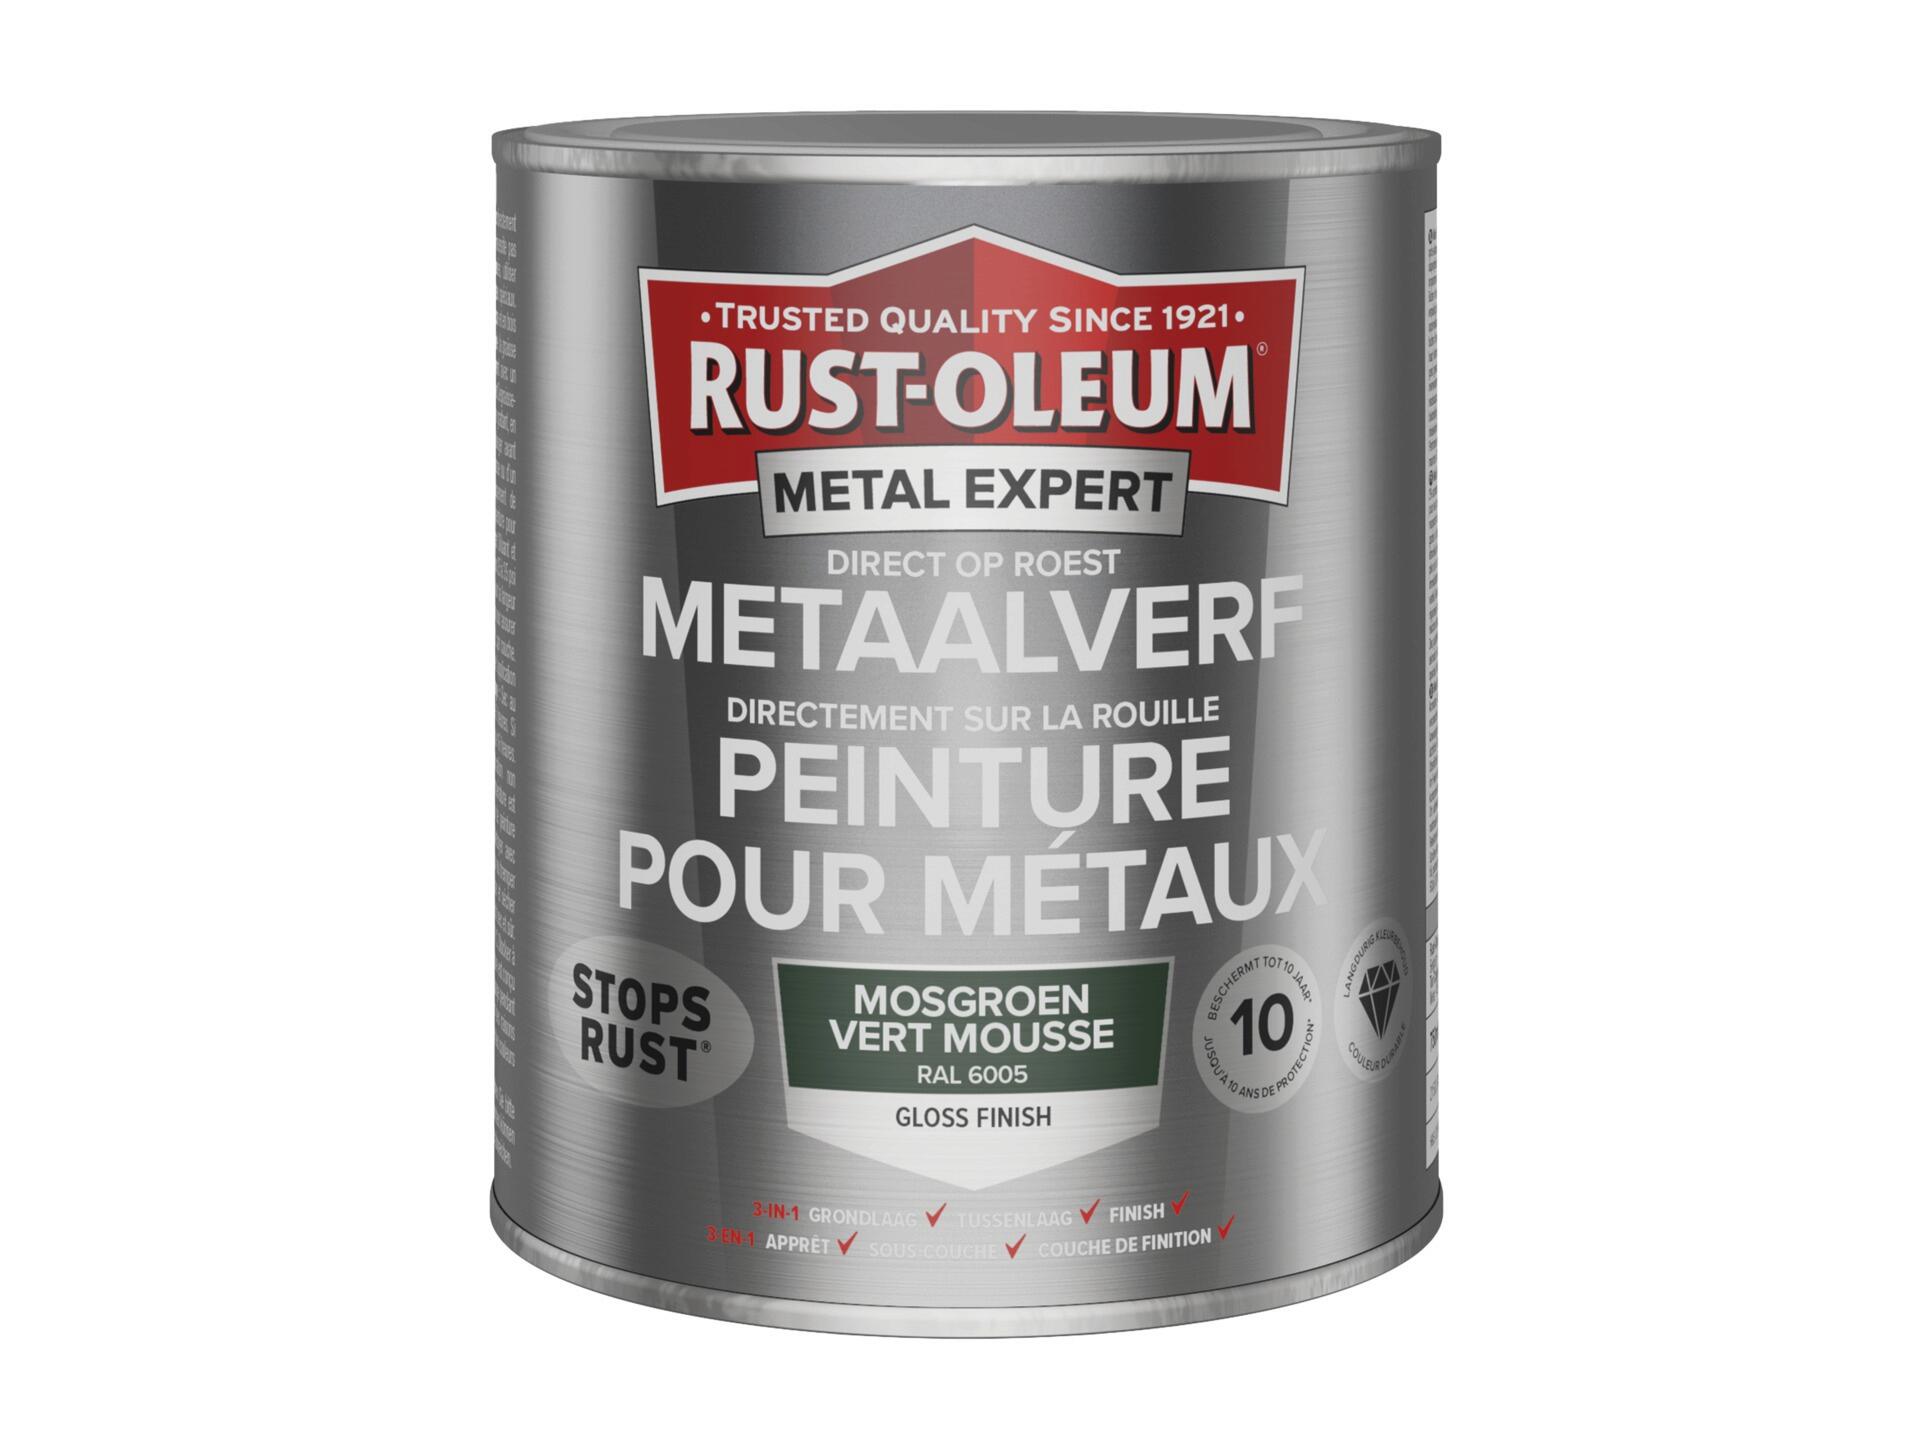 Rust-oleum Metal Expert peinture pour métaux brillant 750ml vert mousse